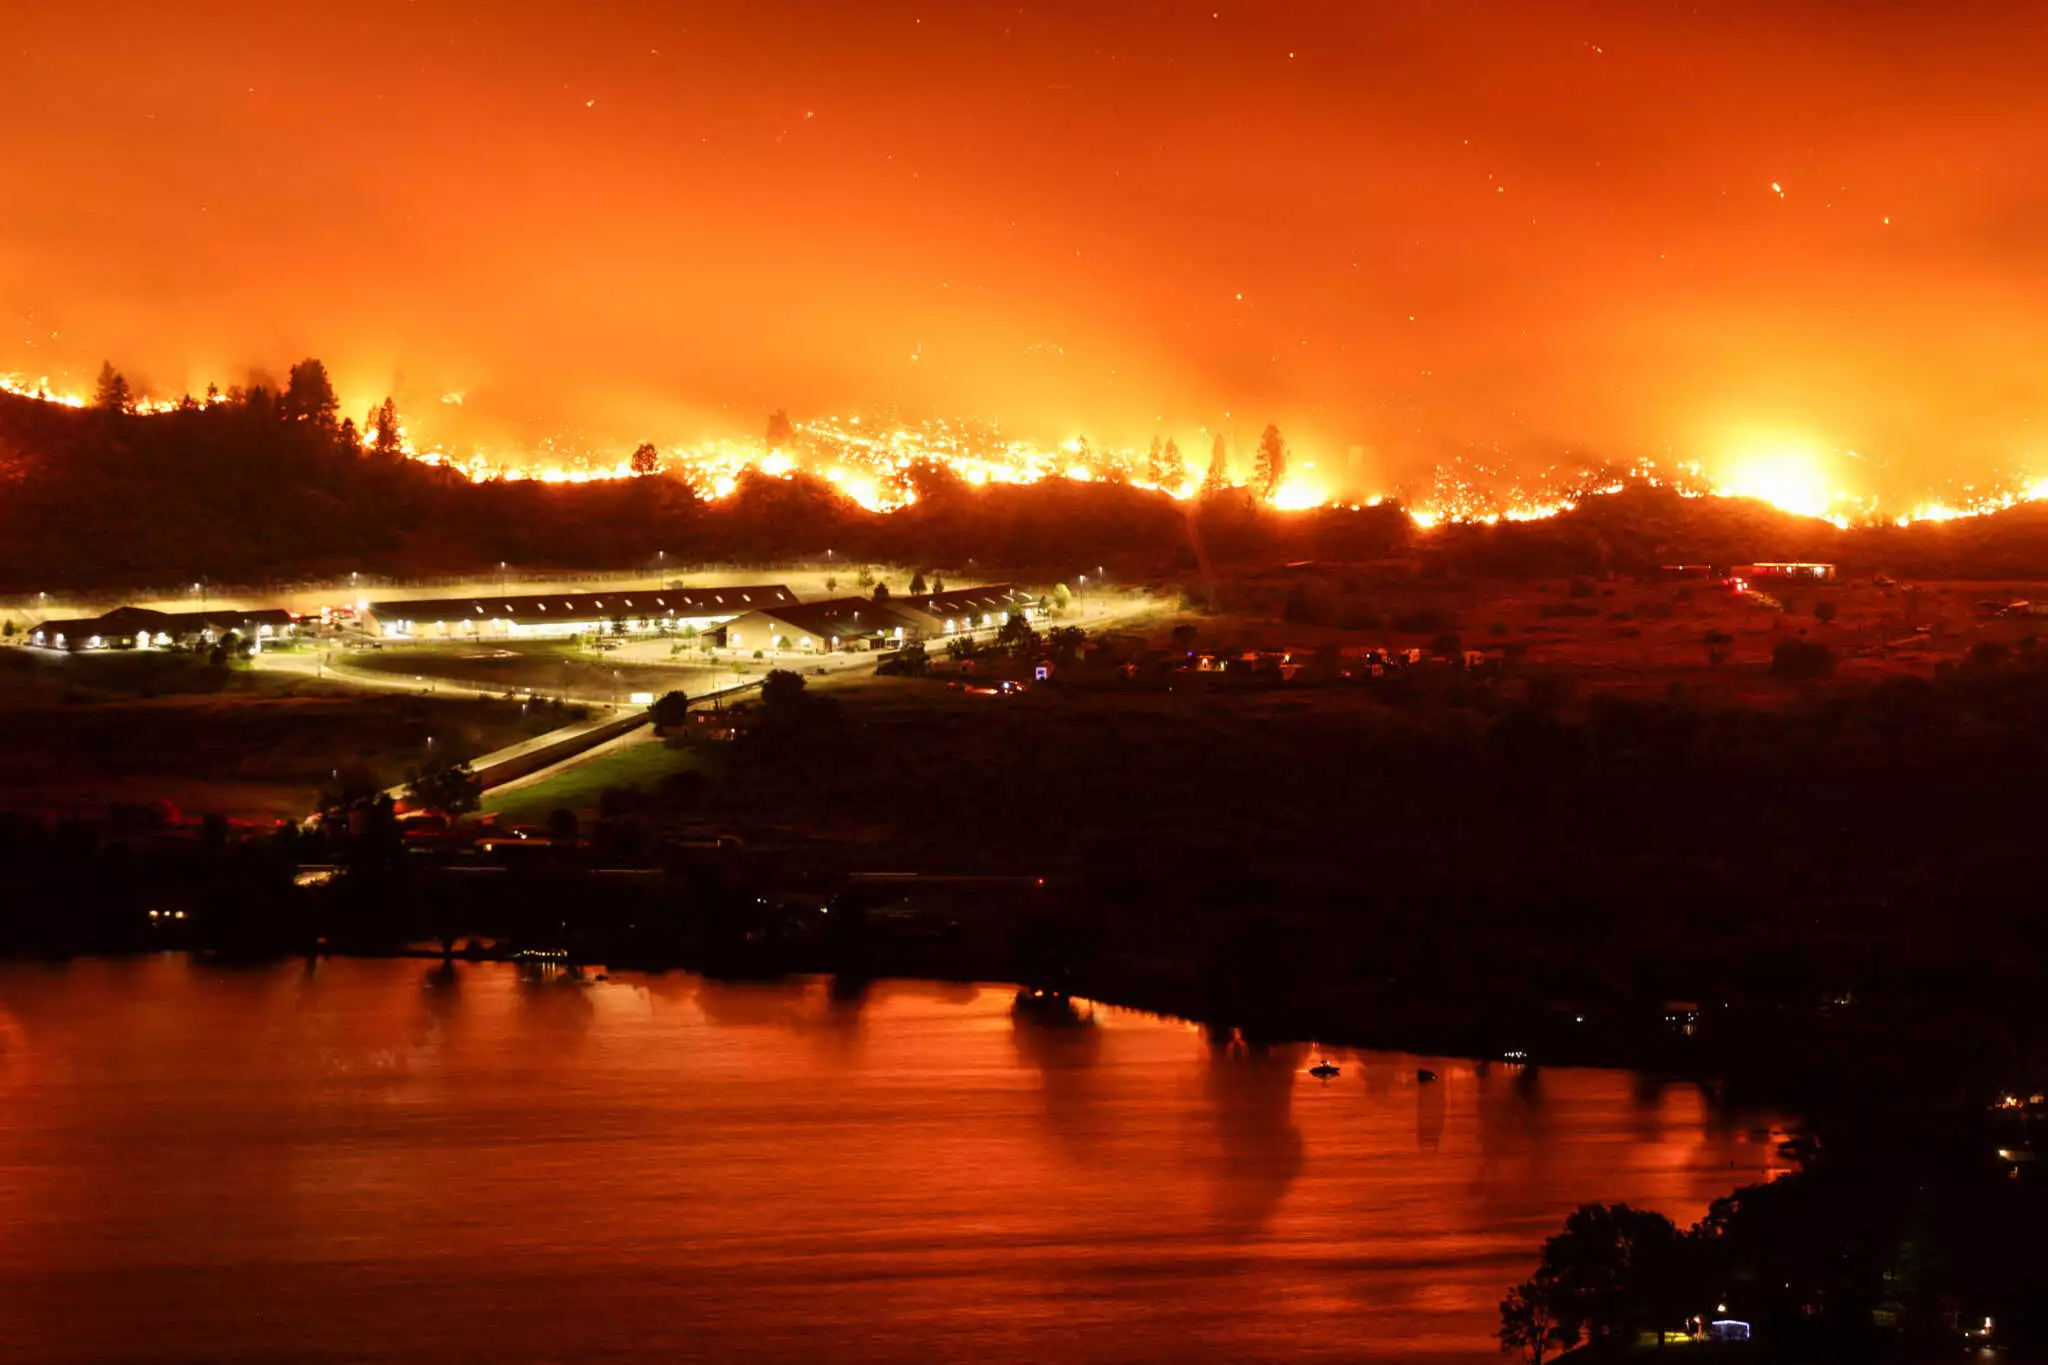 Καναδάς: Εκκενώνεται πόλη από μεγάλη φωτιά που ξεκίνησε από τις ΗΠΑ – Απόκοσμες εικόνες